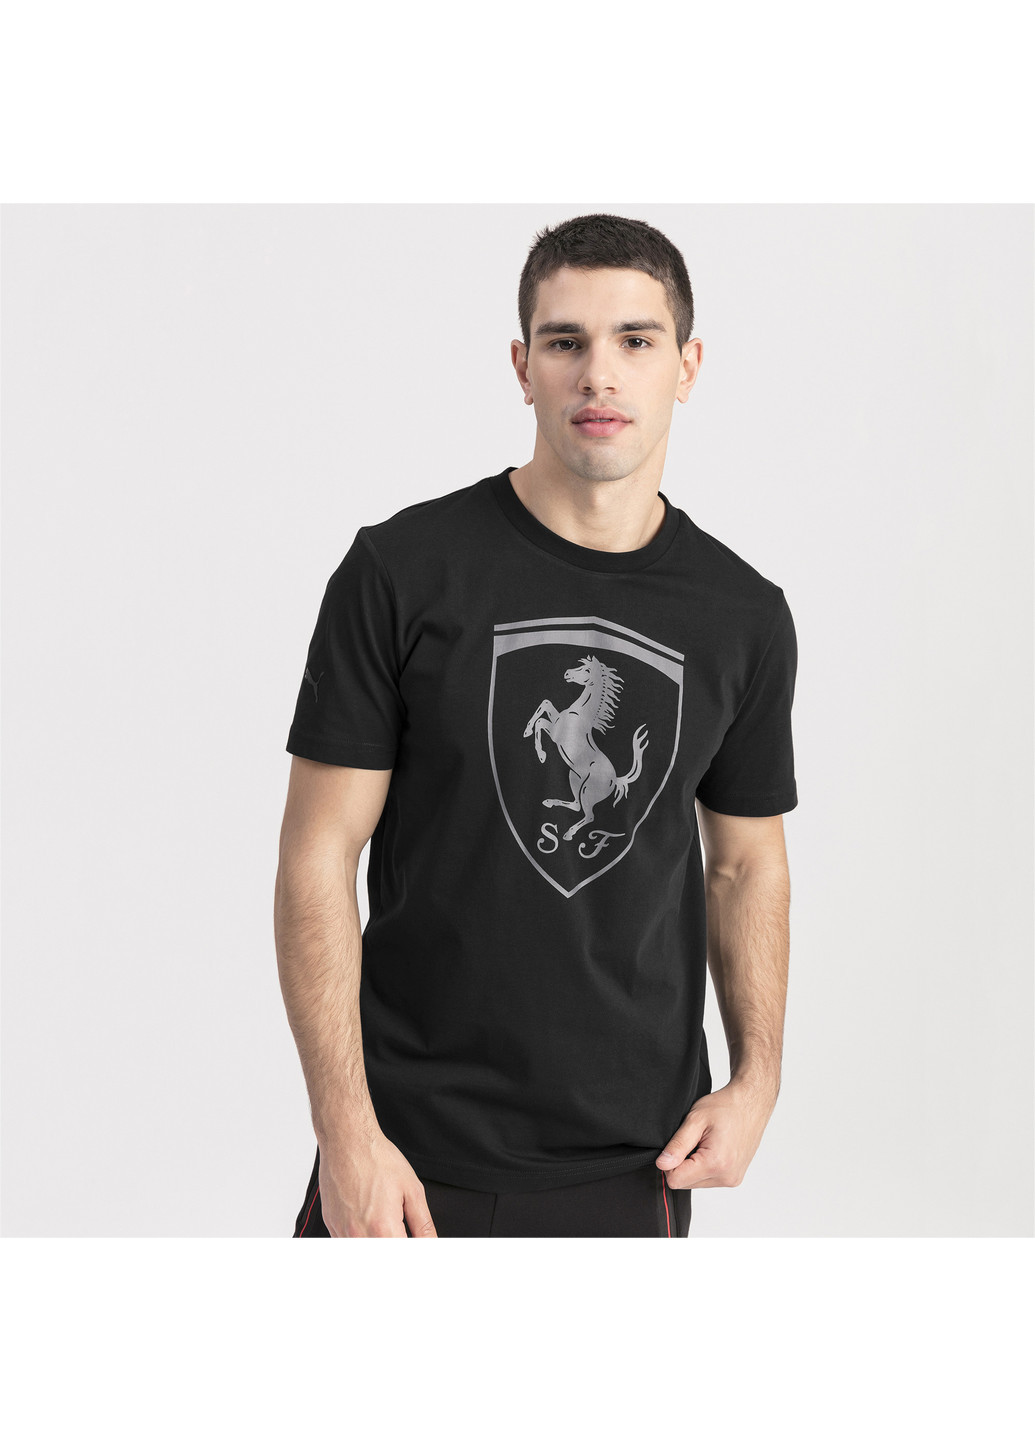 Черная демисезонная футболка Puma Ferrari Big Shield Tee